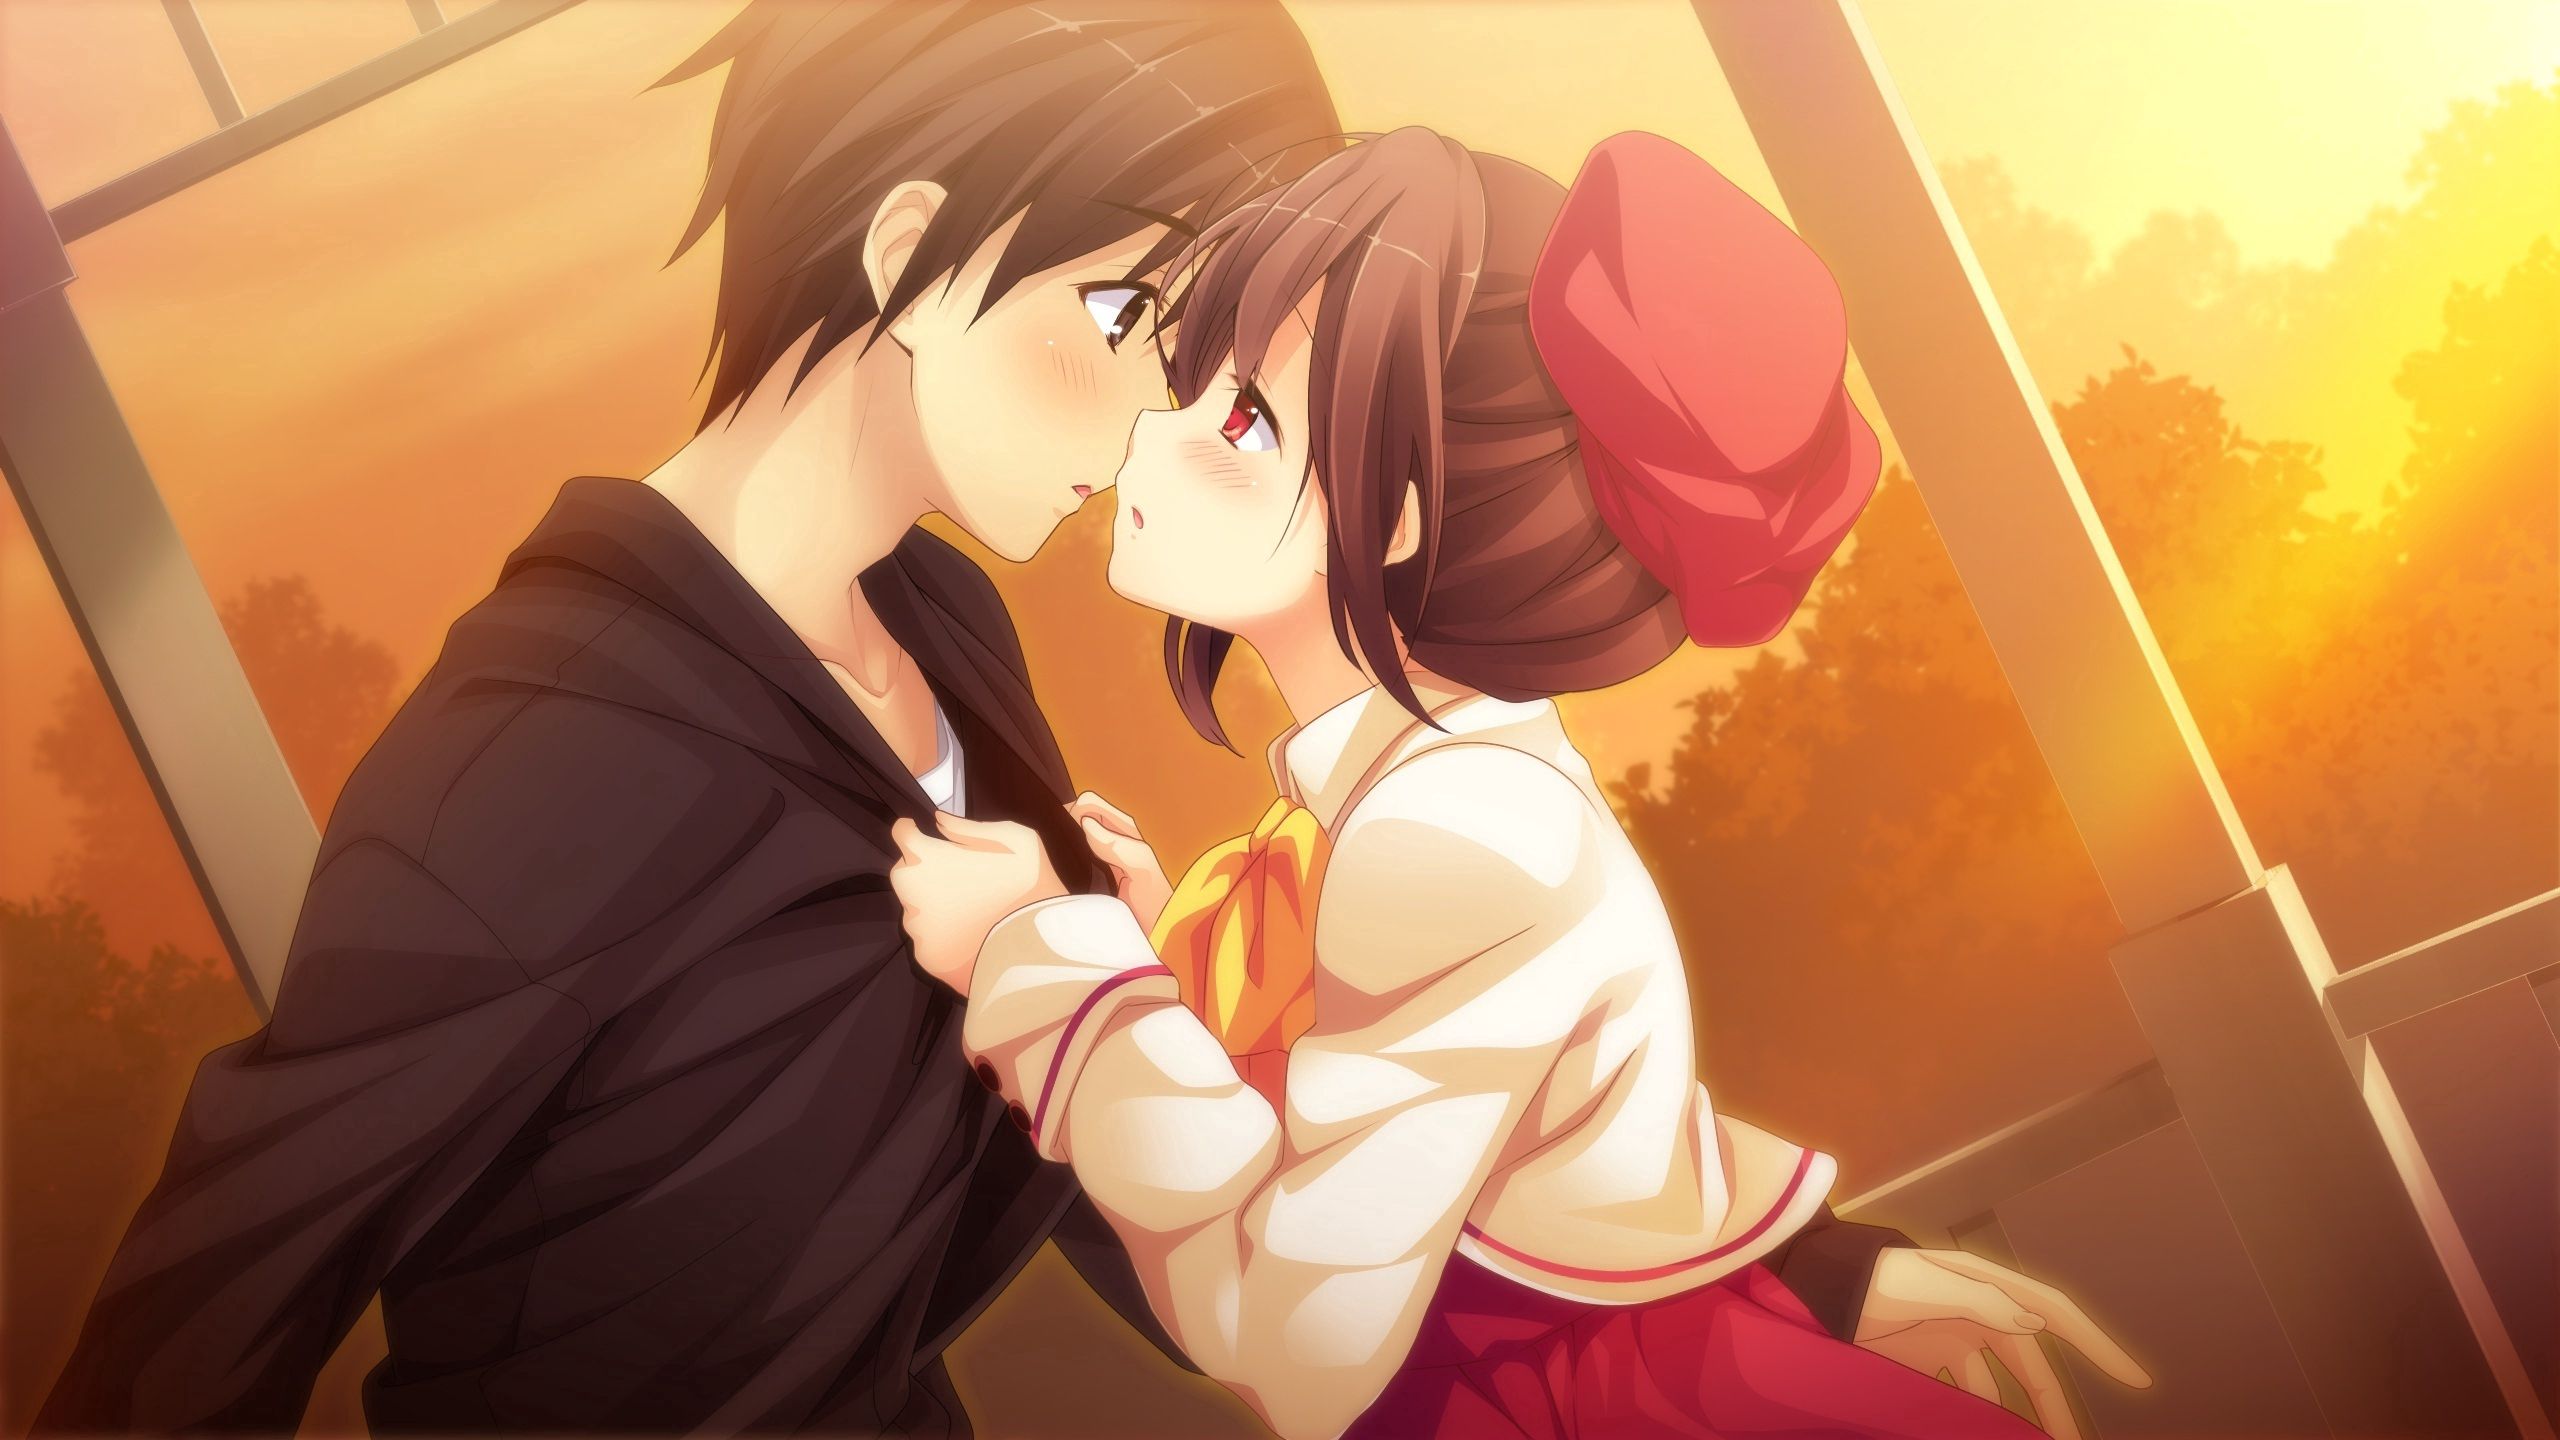 kiss, pair, couple, guy, girl, anime, sunset, art